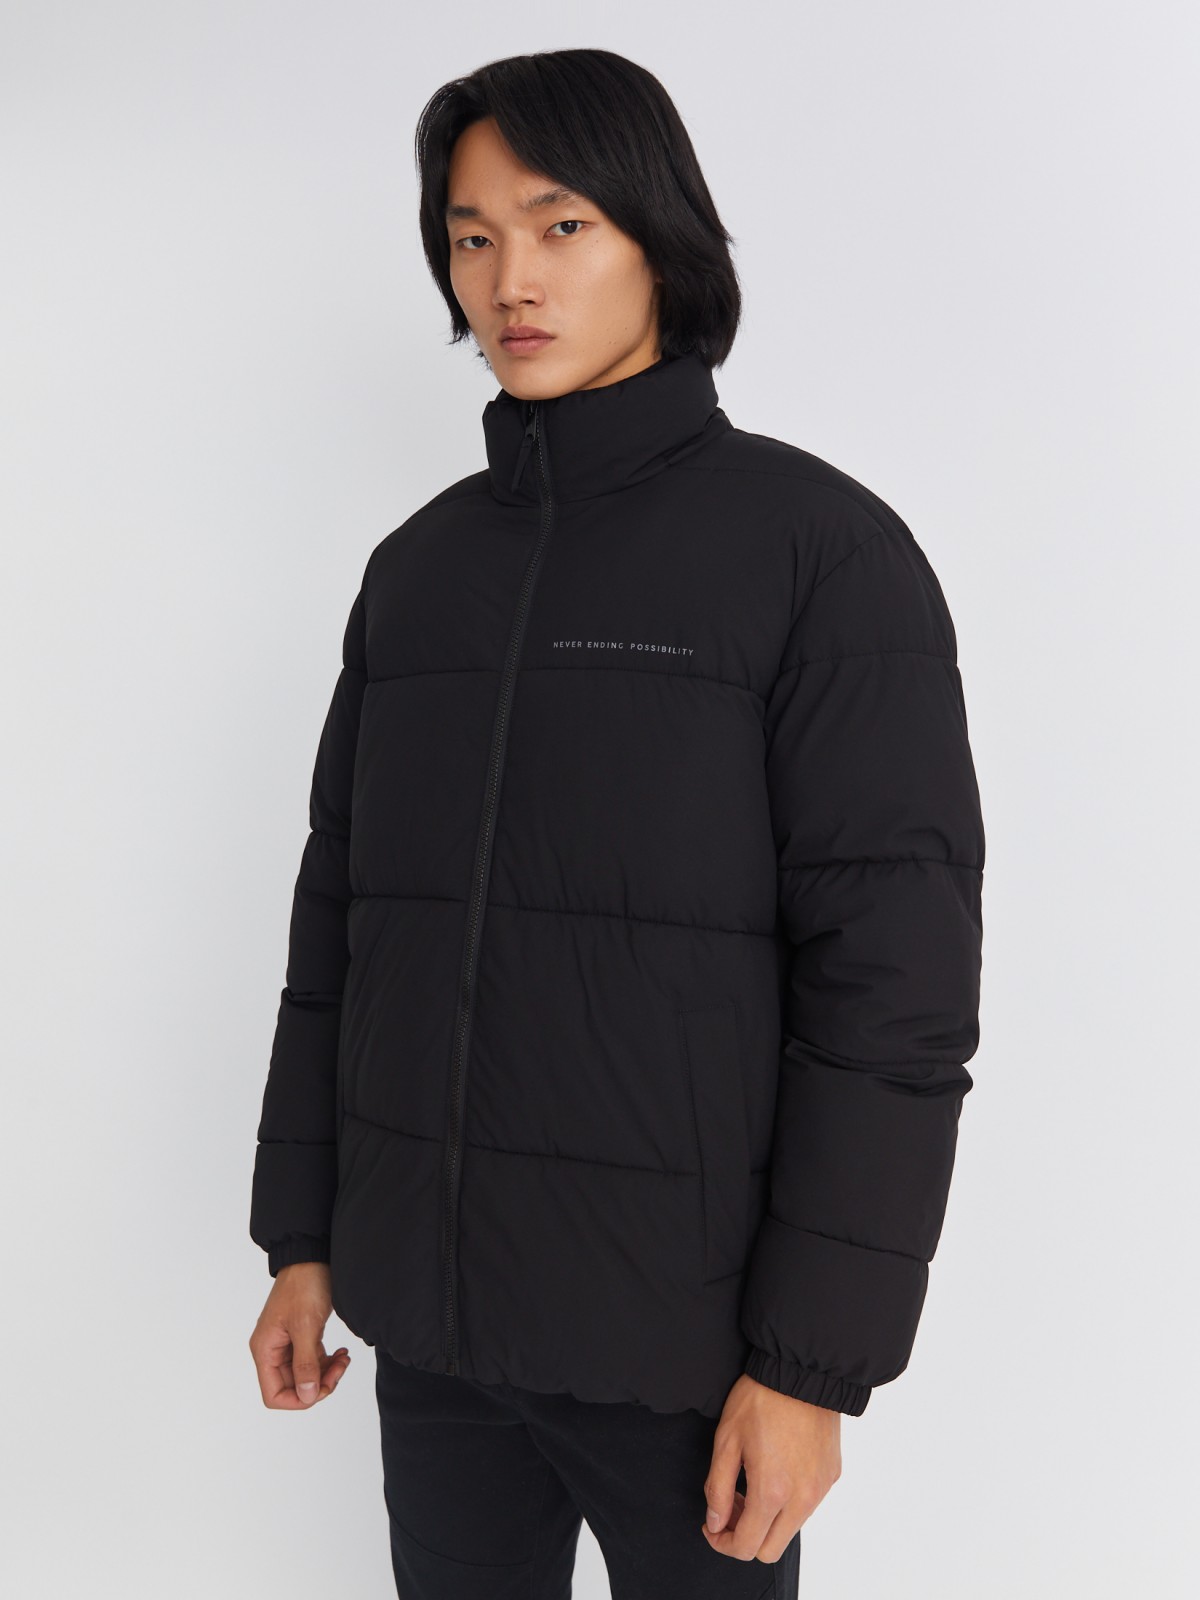 Тёплая стёганая куртка на молнии с воротником-стойкой zolla 01334510L134, цвет черный, размер S - фото 4